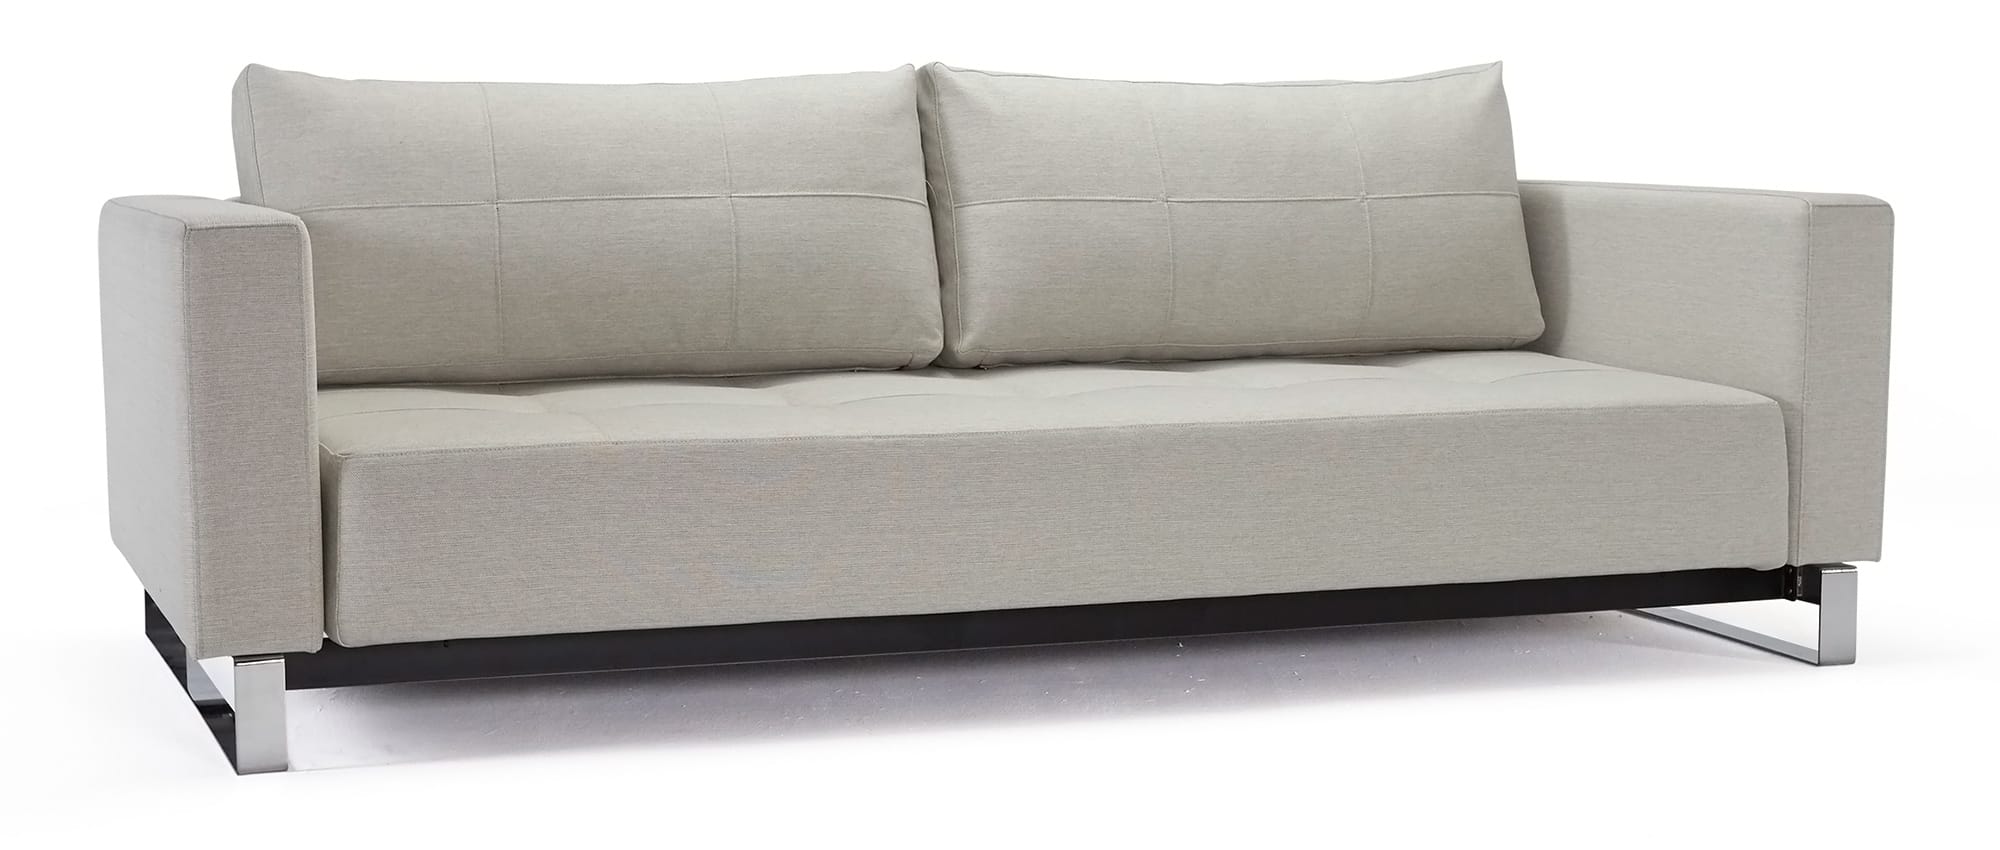 Innovation Lounge Sofa CASSIUS DELUXE EXCESS mit Chromfüßen und Armlehnen, Gästebett für 2 Personen - 155x200